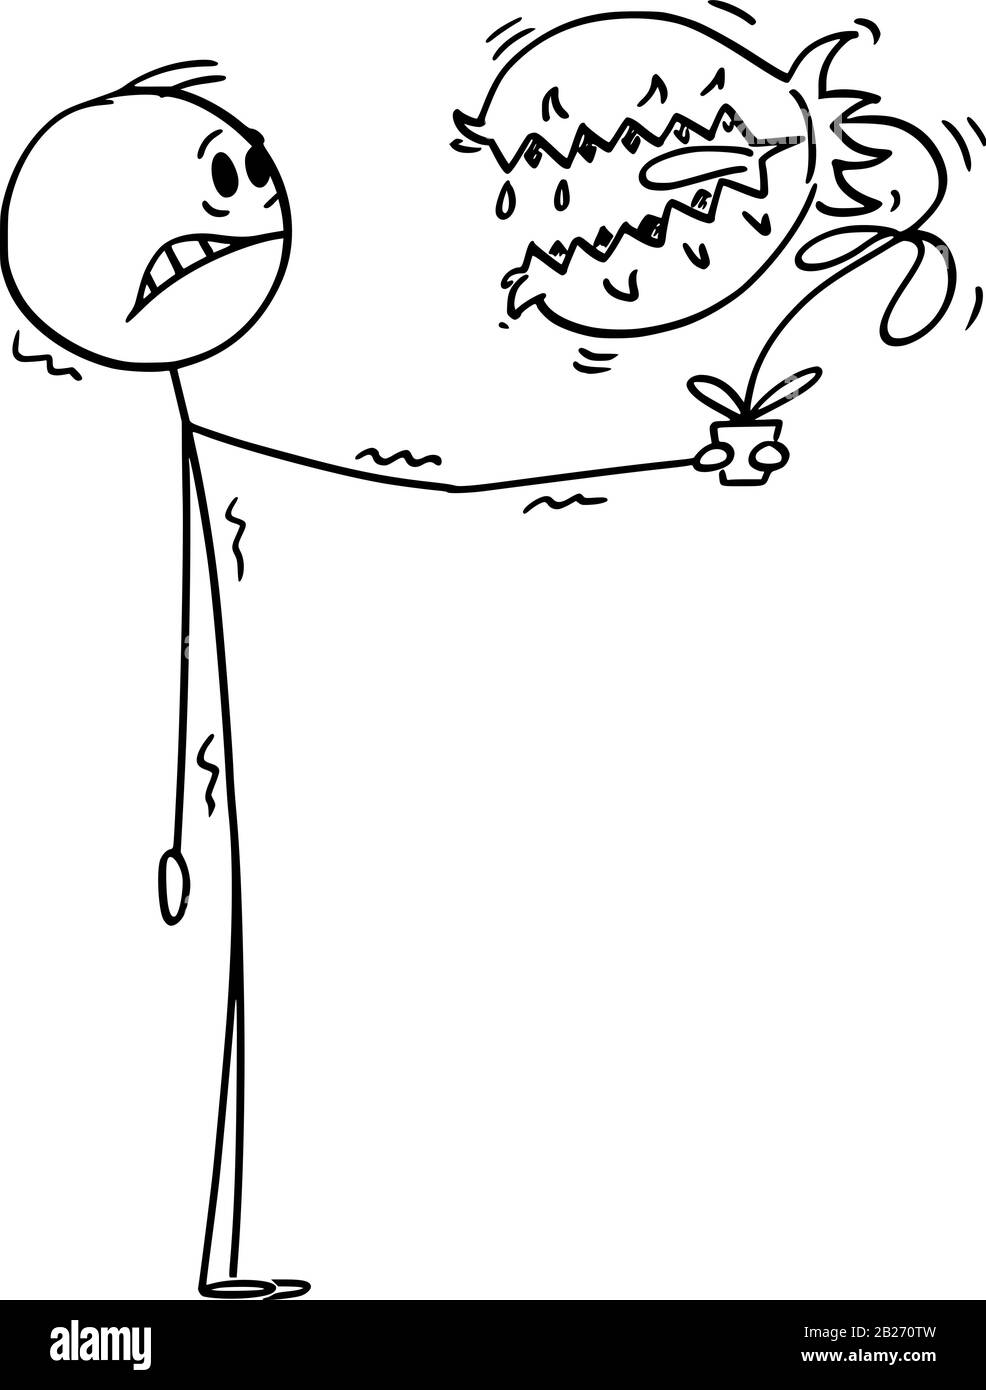 Vektor-Cartoon-Stick-Figur mit konzeptioneller Illustration von erschrockenen oder verängstigten Menschen, die gefährliche fleischfressende Pflanzen mit Mund und Zähnen im Blumentopf halten. Stock Vektor